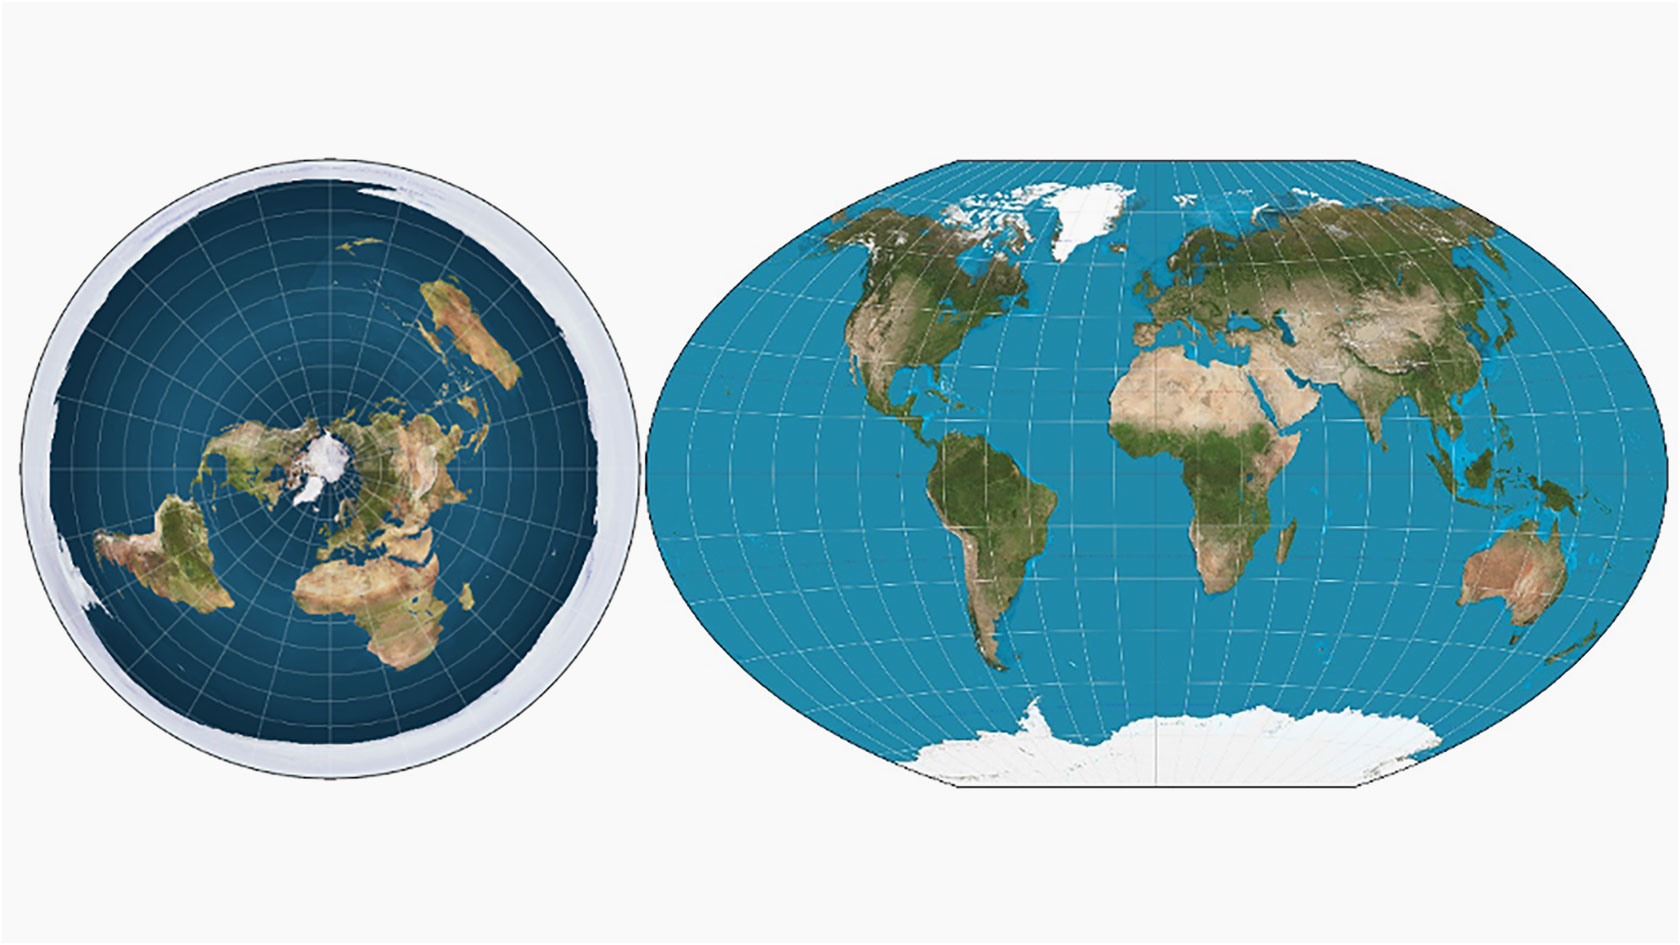 Darstellungen der Erde: Links als Scheibe (Quelle: Flat Earth Society, rechts als Kugel (Quelle: NASA)